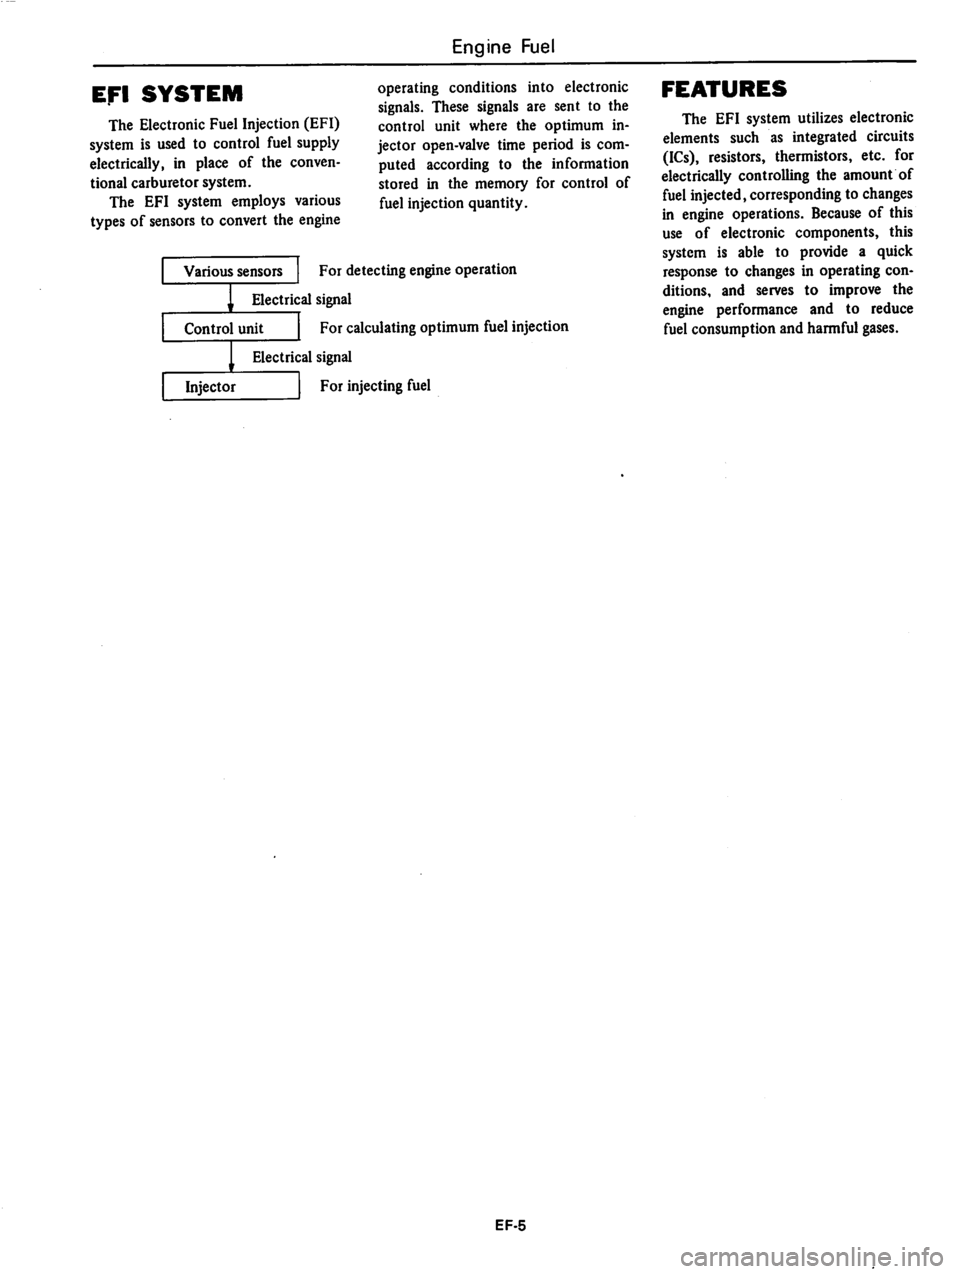 DATSUN 810 1979 Manual PDF 